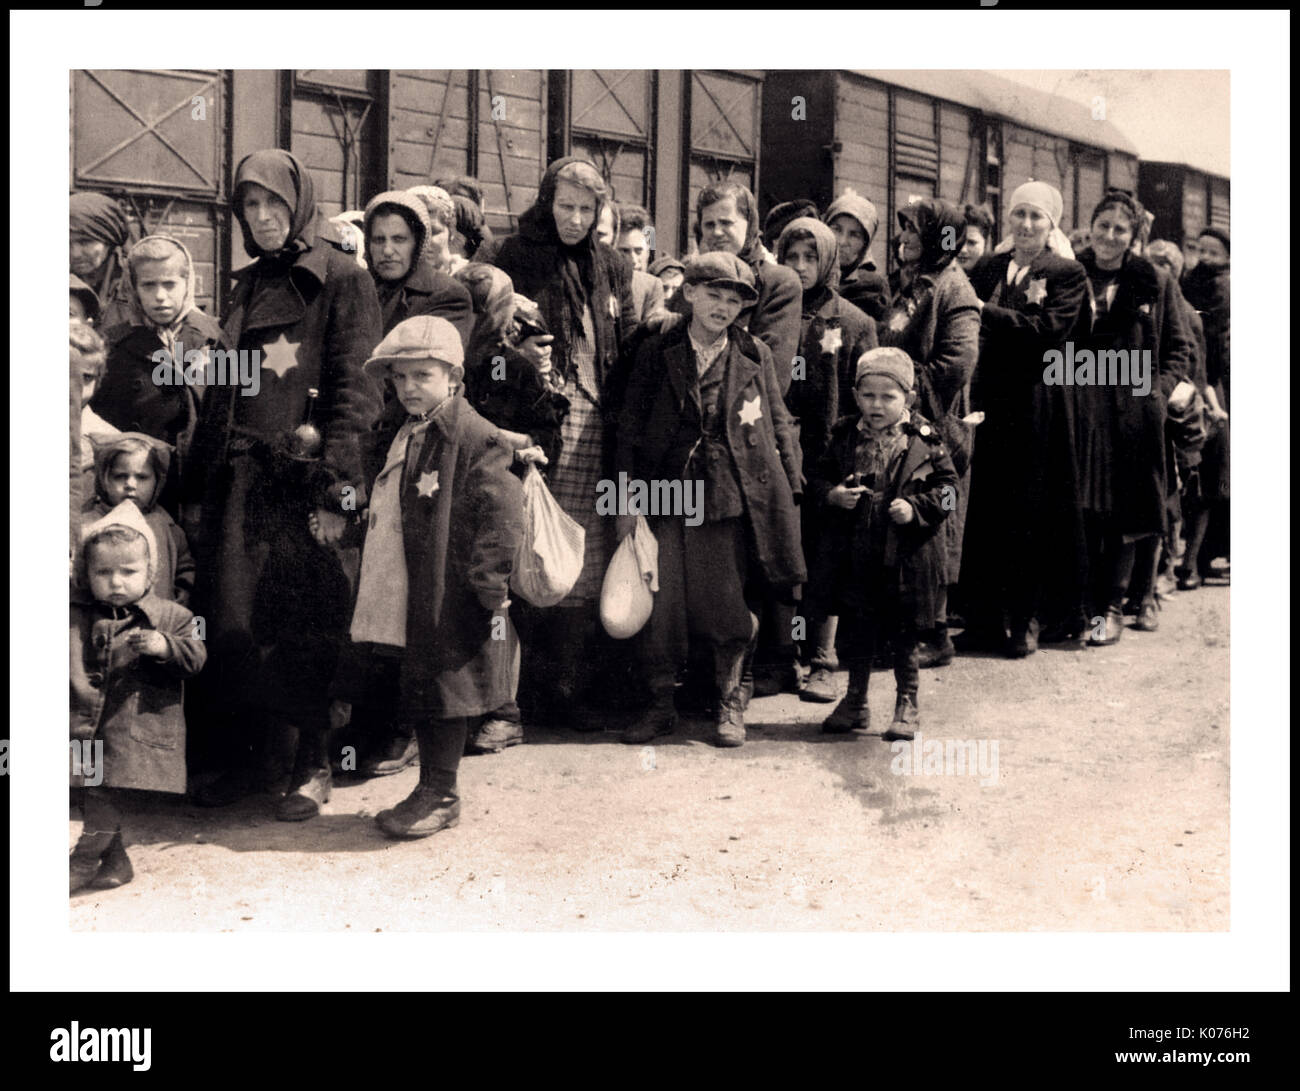 Auschwitz-Birkenau jüdische Frauen und Kinder, die von den Nazis gekennzeichnete gelbe Sterne tragen, kommen im WW2. Deutschen Konzentrations- und Vernichtungslager der Nazis an. Jüdische Kinder waren die größte Gruppe von denen, die ins Lager deportiert wurden. Sie wurden ab Anfang 1942 im Rahmen der „endgültigen Lösung der jüdischen Frage“ in der Regel zusammen mit Erwachsenen dorthin geschickt Die totale Zerstörung der jüdischen Bevölkerung Europas...das Konzentrationslager Auschwitz war ein Netzwerk deutscher nationalsozialistischer Konzentrationslager und Vernichtungslager, die vom Dritten Reich in polnischen Gebieten betrieben wurden, die während des Zweiten Weltkriegs von Nazideutschland annektiert wurden Stockfoto